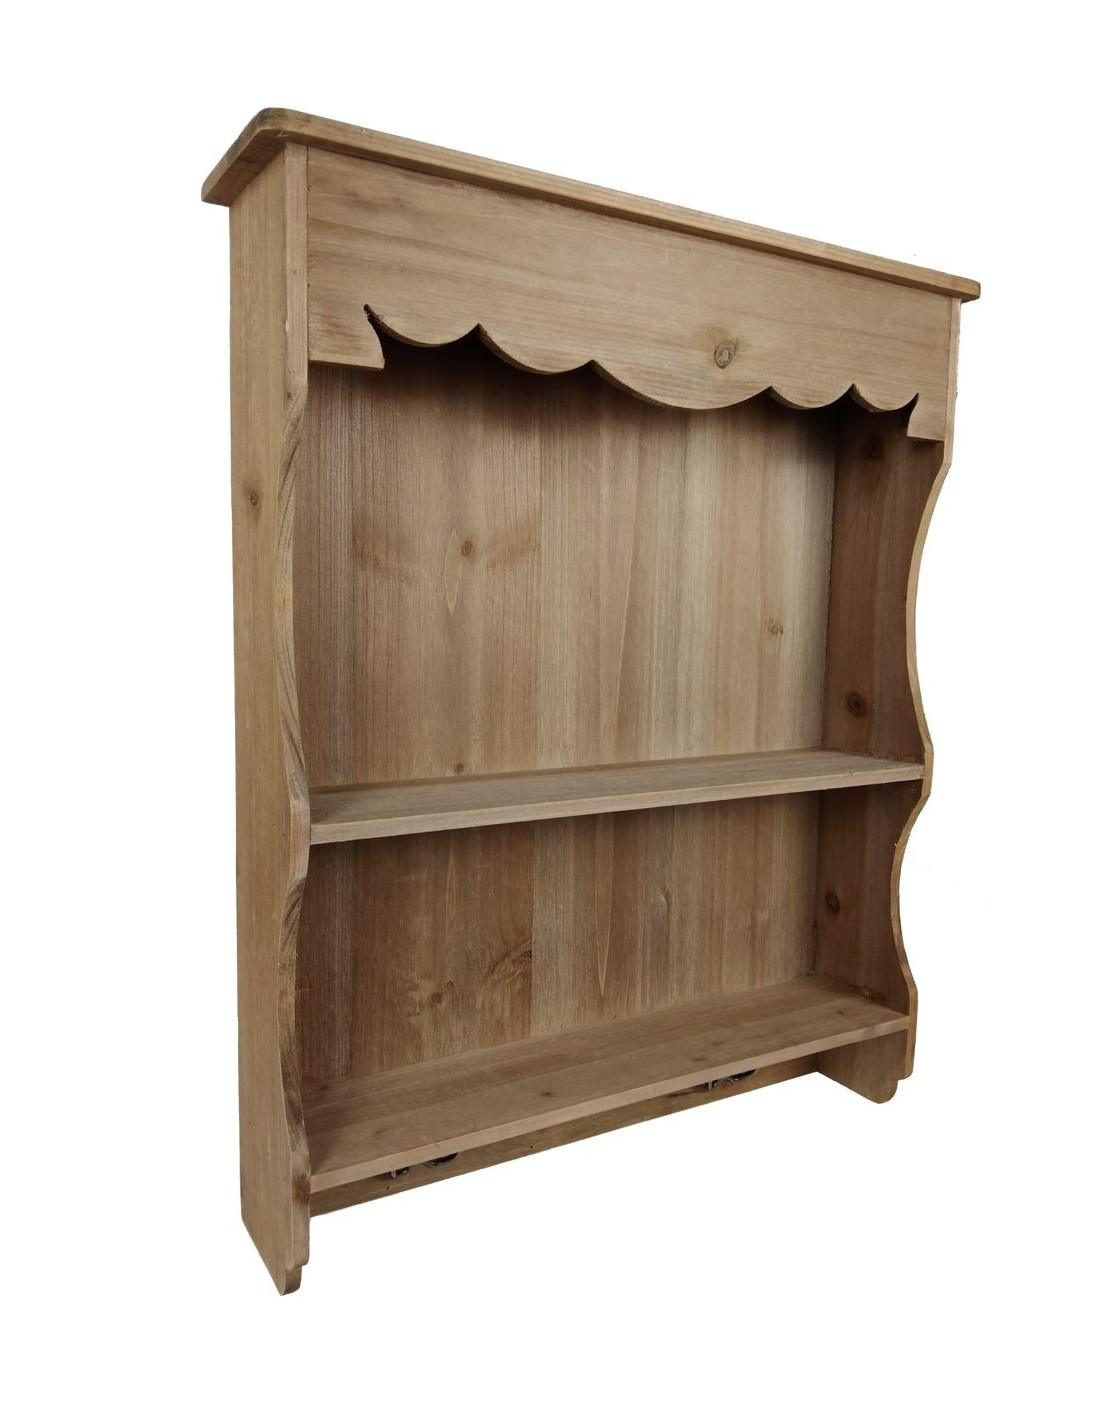 Petite Bibliothèque en bois avec étagère et Cintres de Style rustique, meuble auxiliaire pour la cuisine.Dimensions:60x50x12 cm.